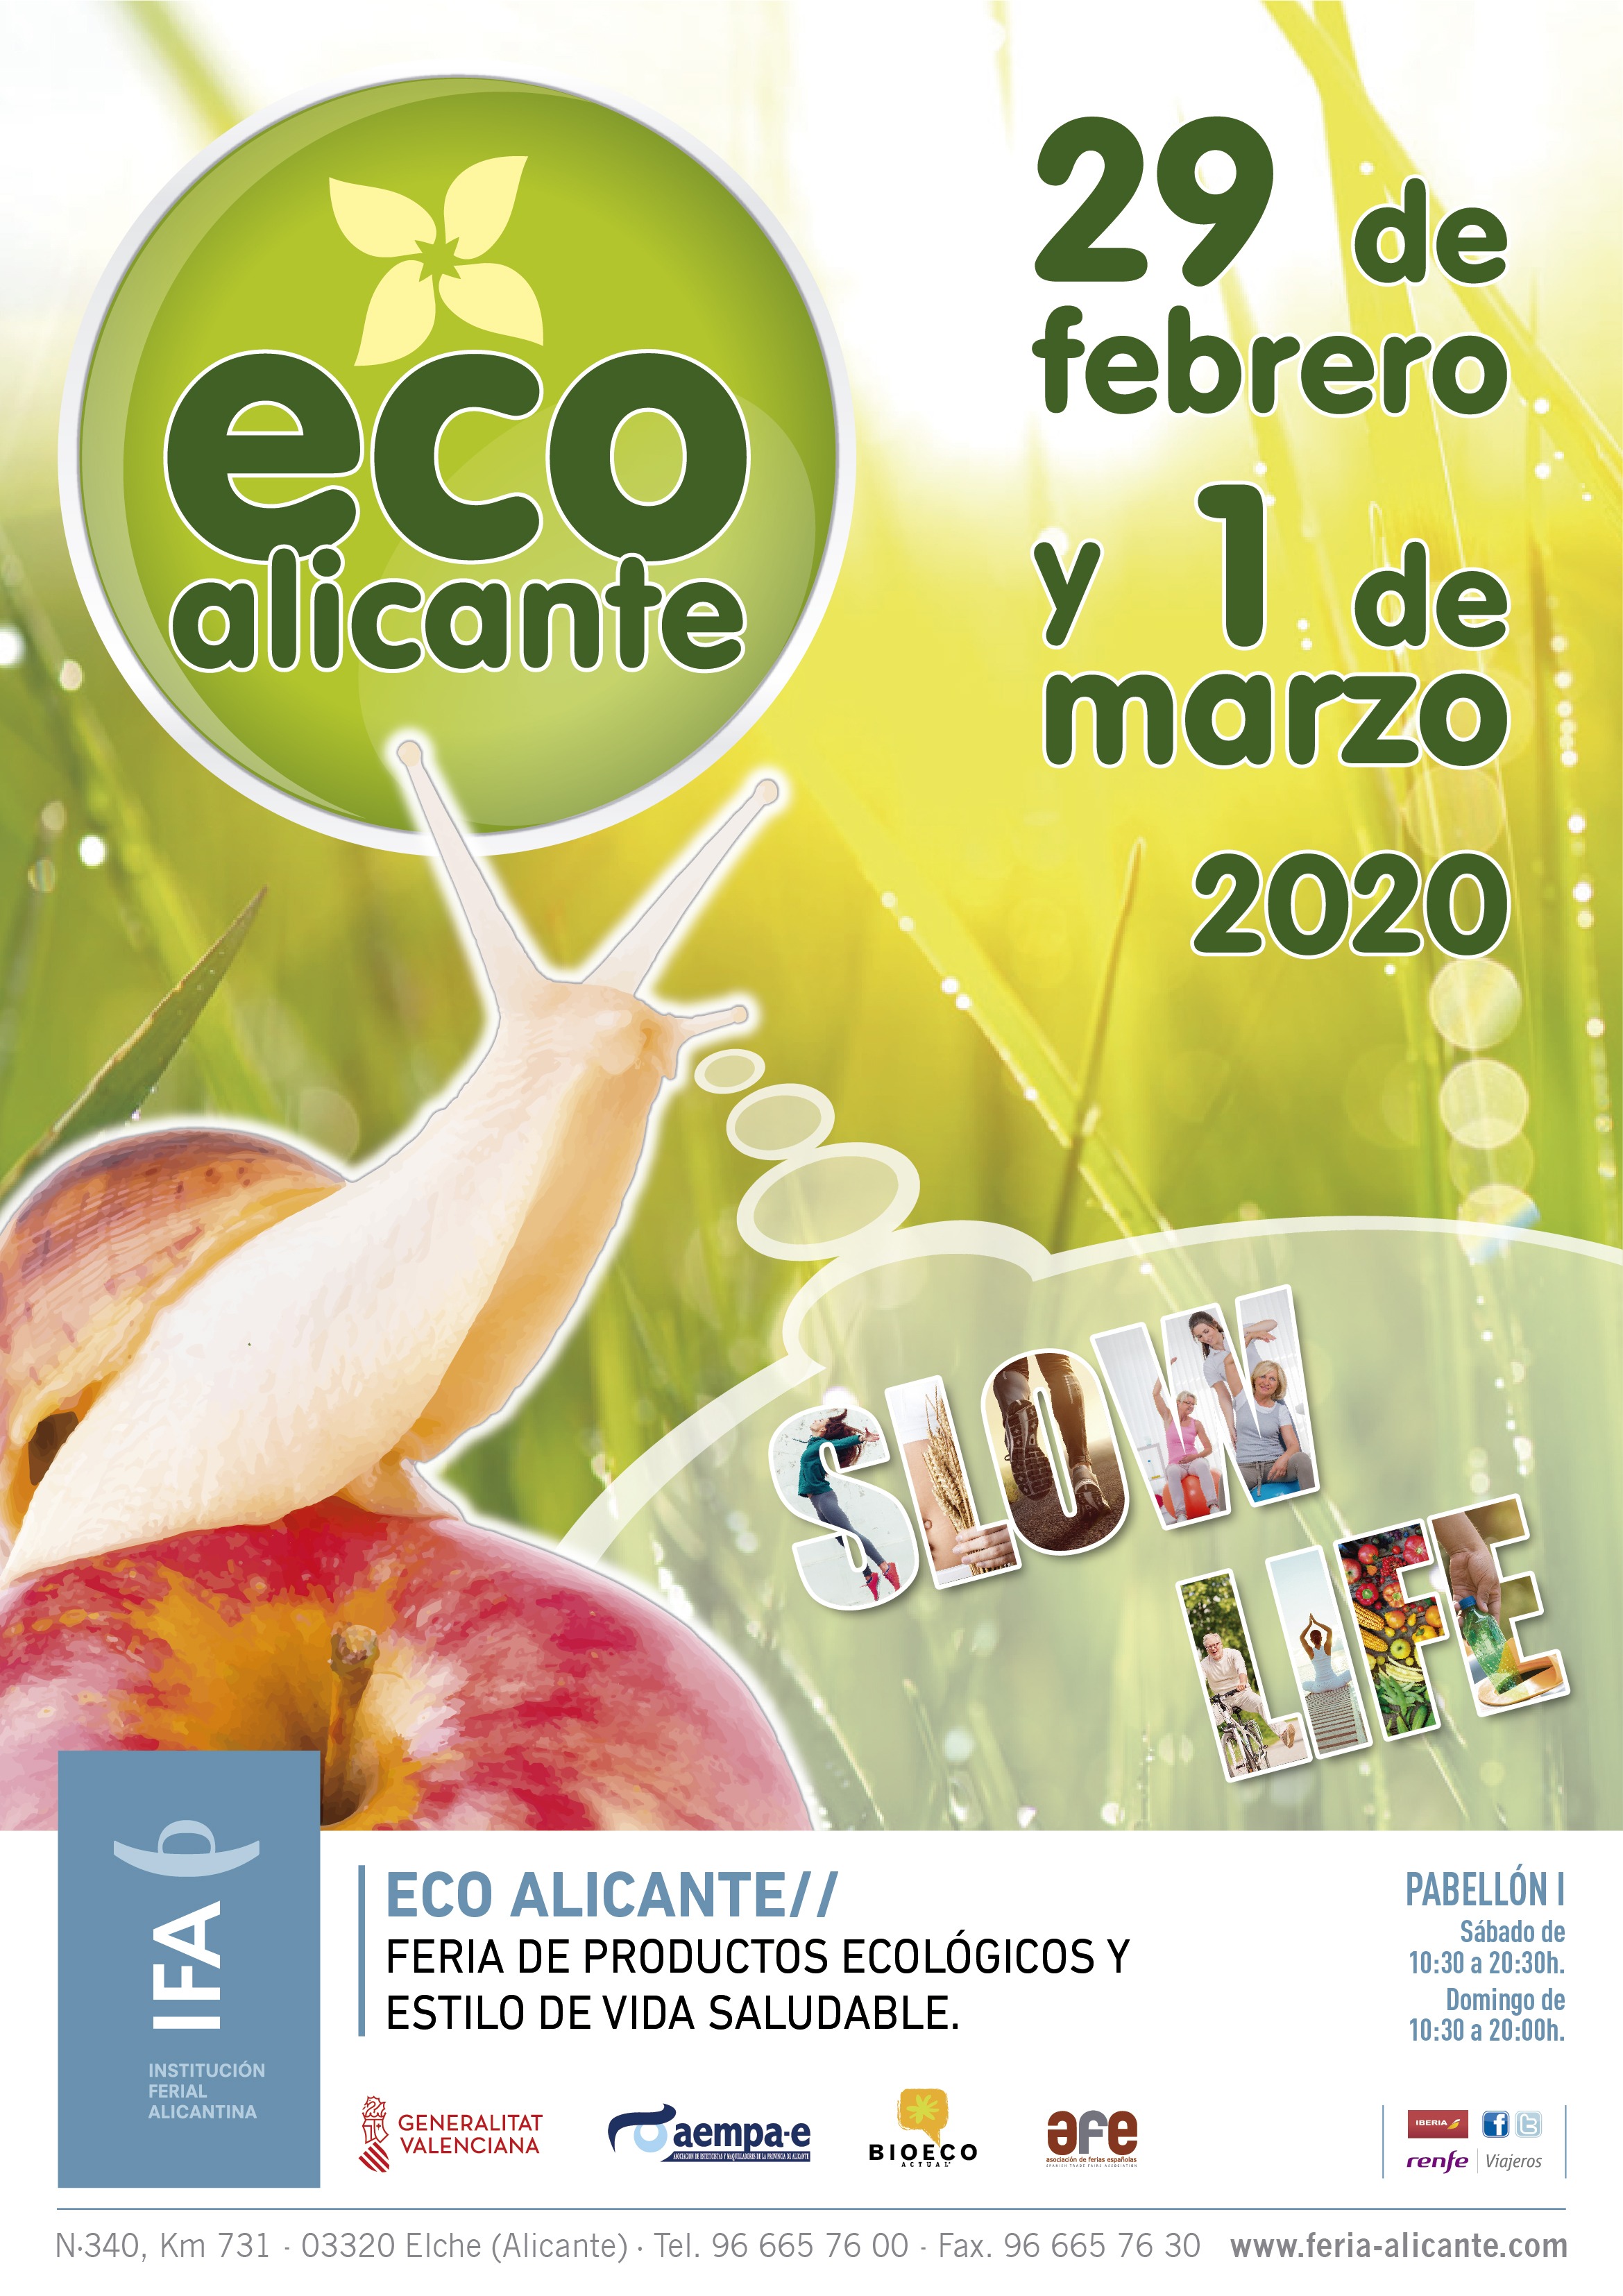 Medesconecto.com presenta sus innovadores productos en la feria Eco Alicante en IFA del 29 de febrero al 1 de marzo